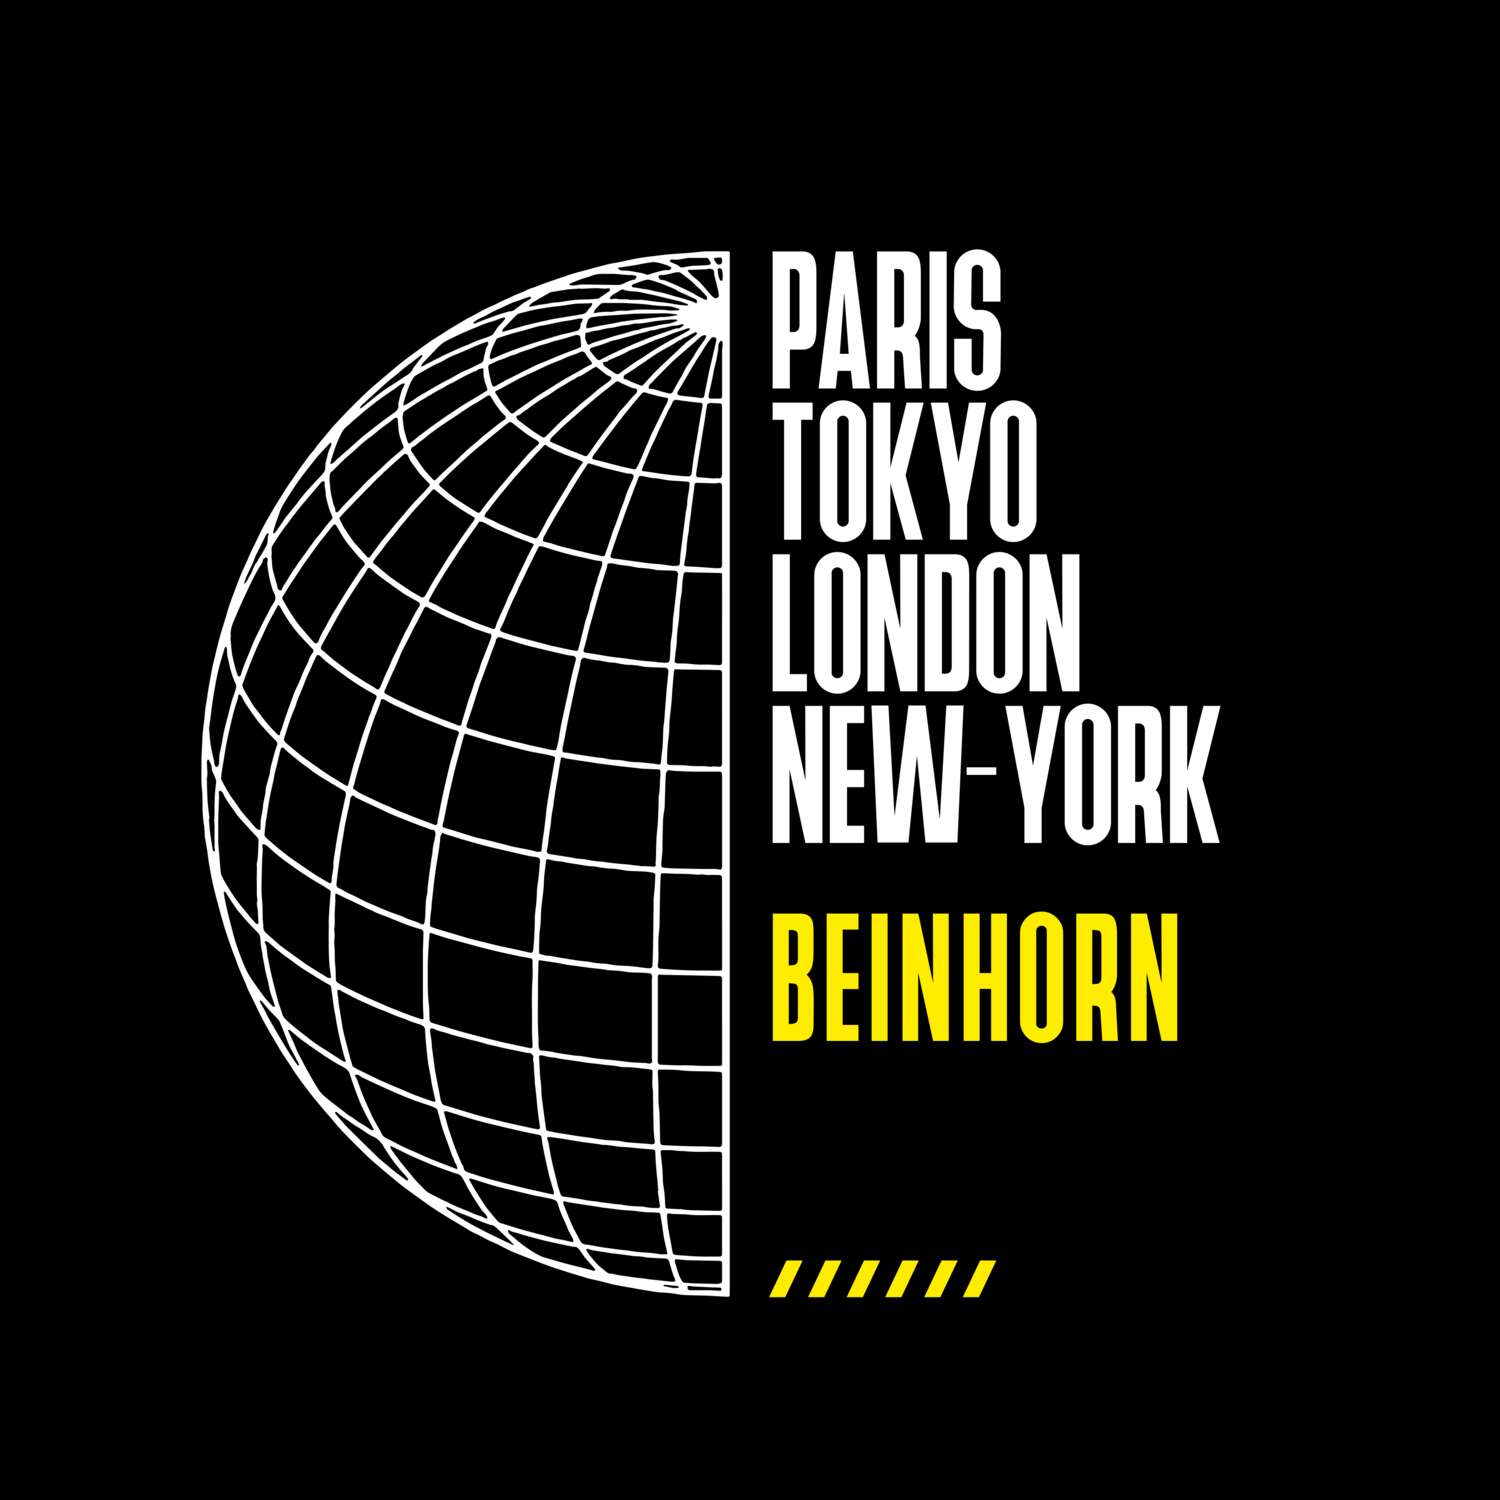 Beinhorn T-Shirt »Paris Tokyo London«